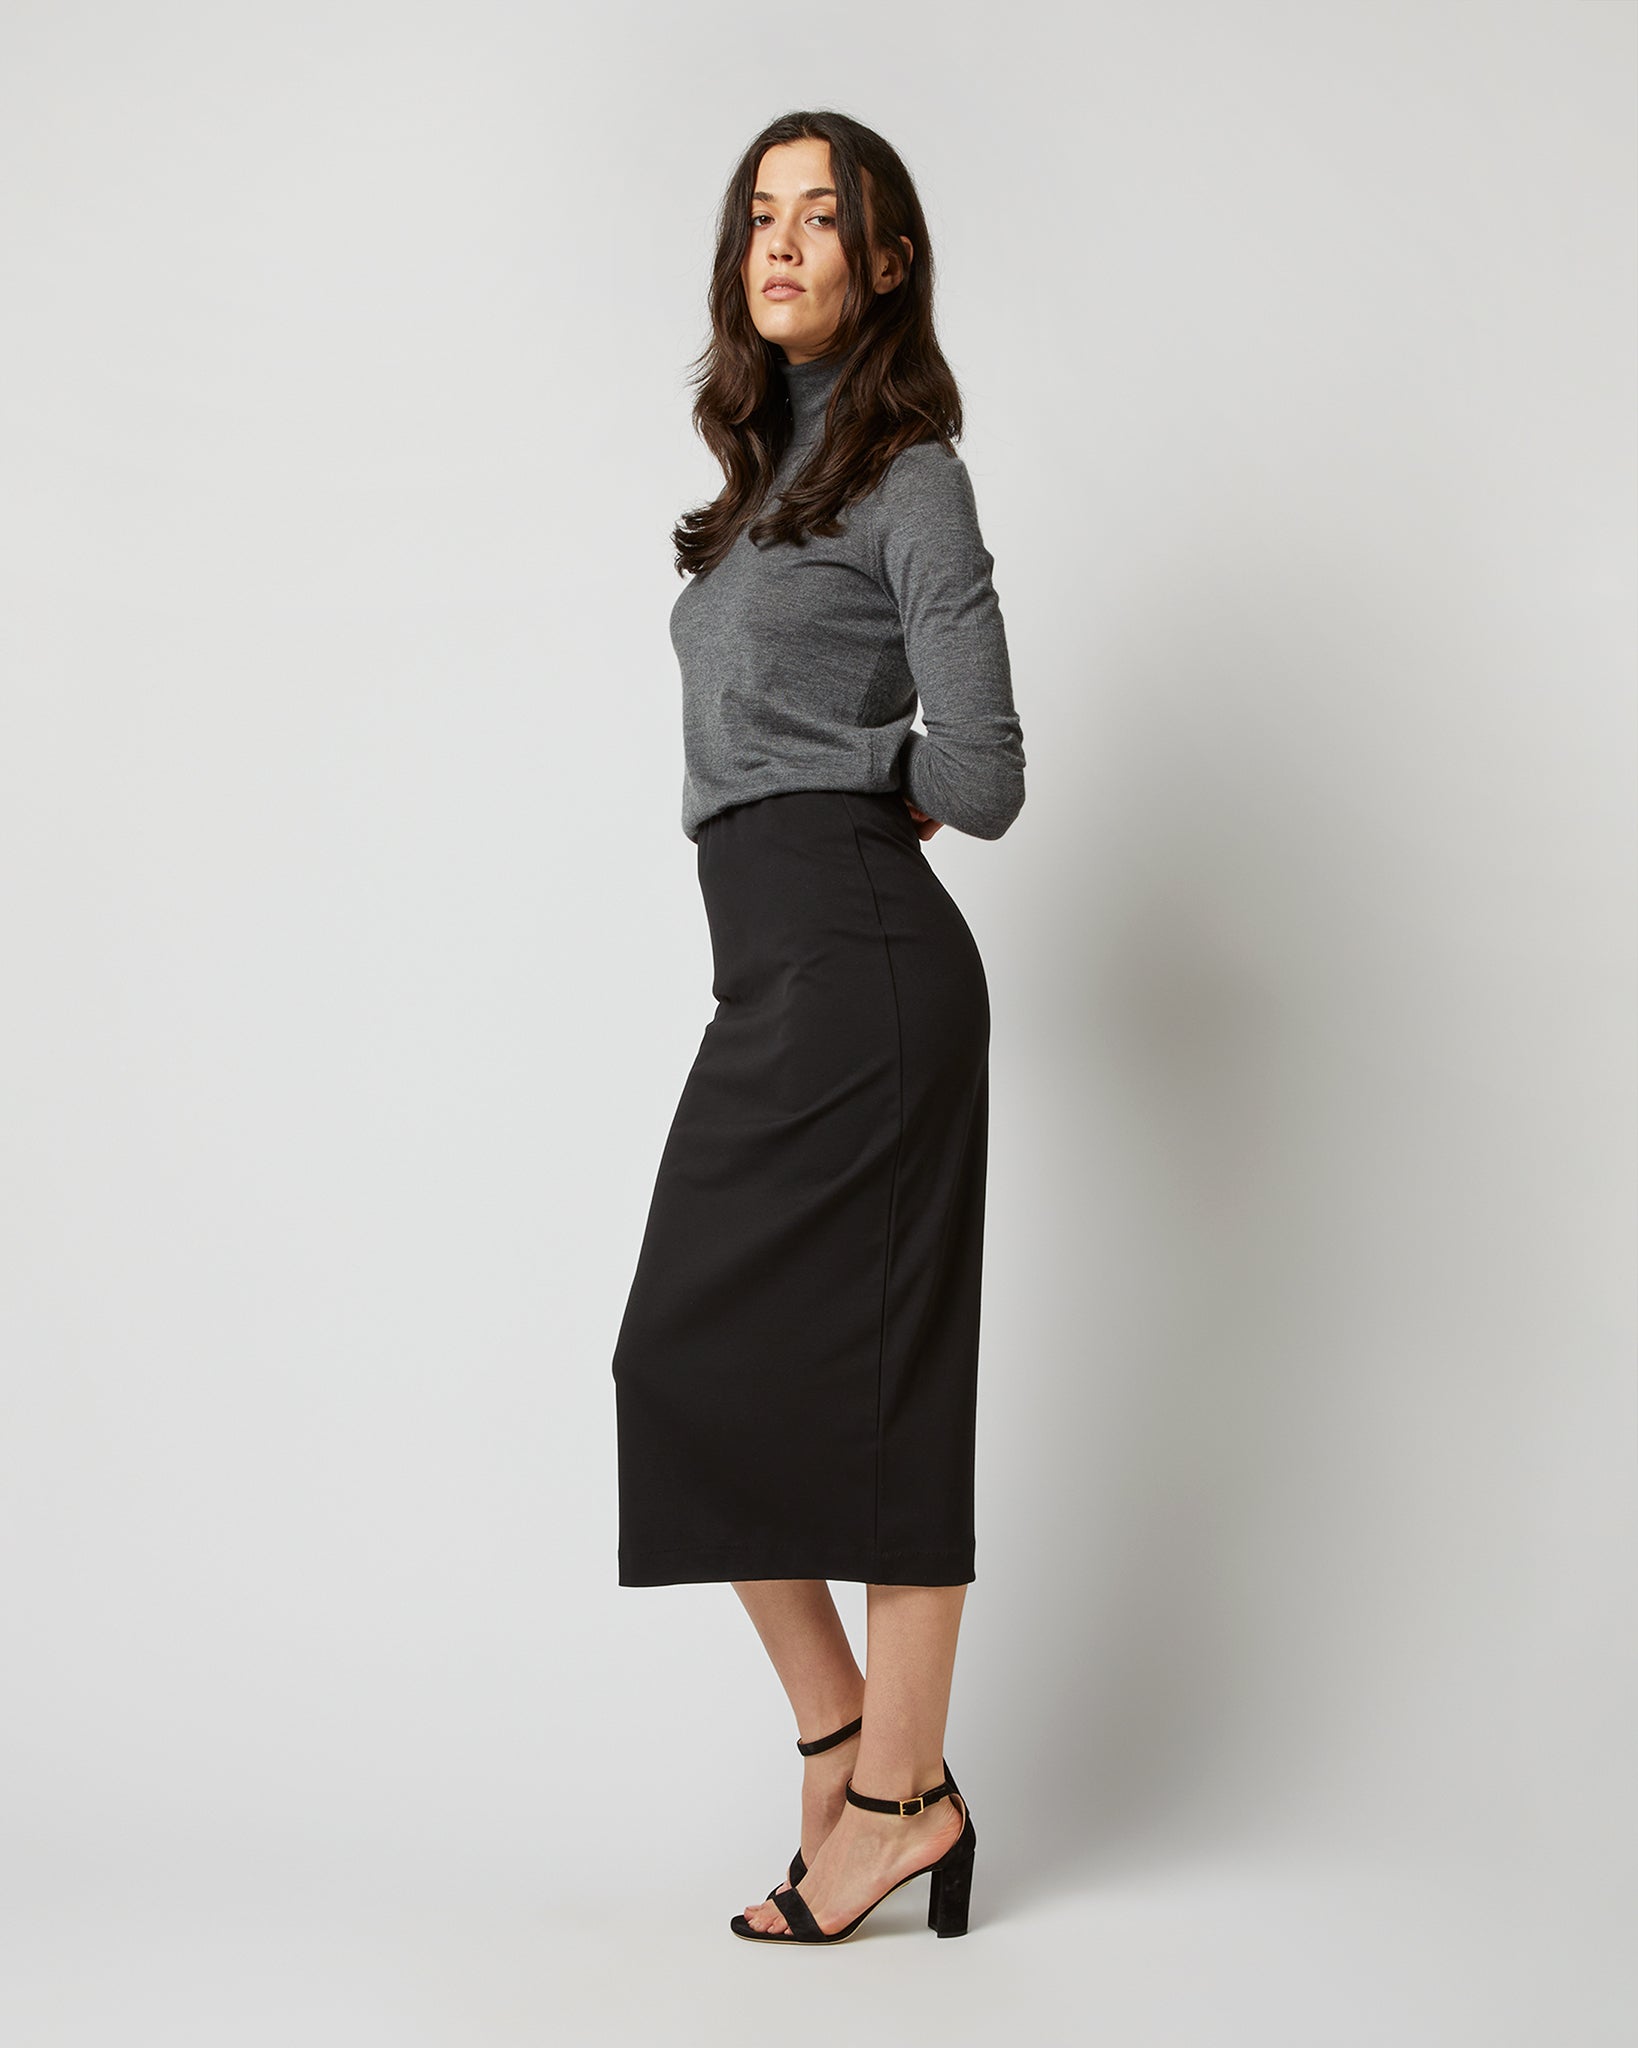 Long Pull-On Skirt in Black Ponte Knit | Shop Ann Mashburn